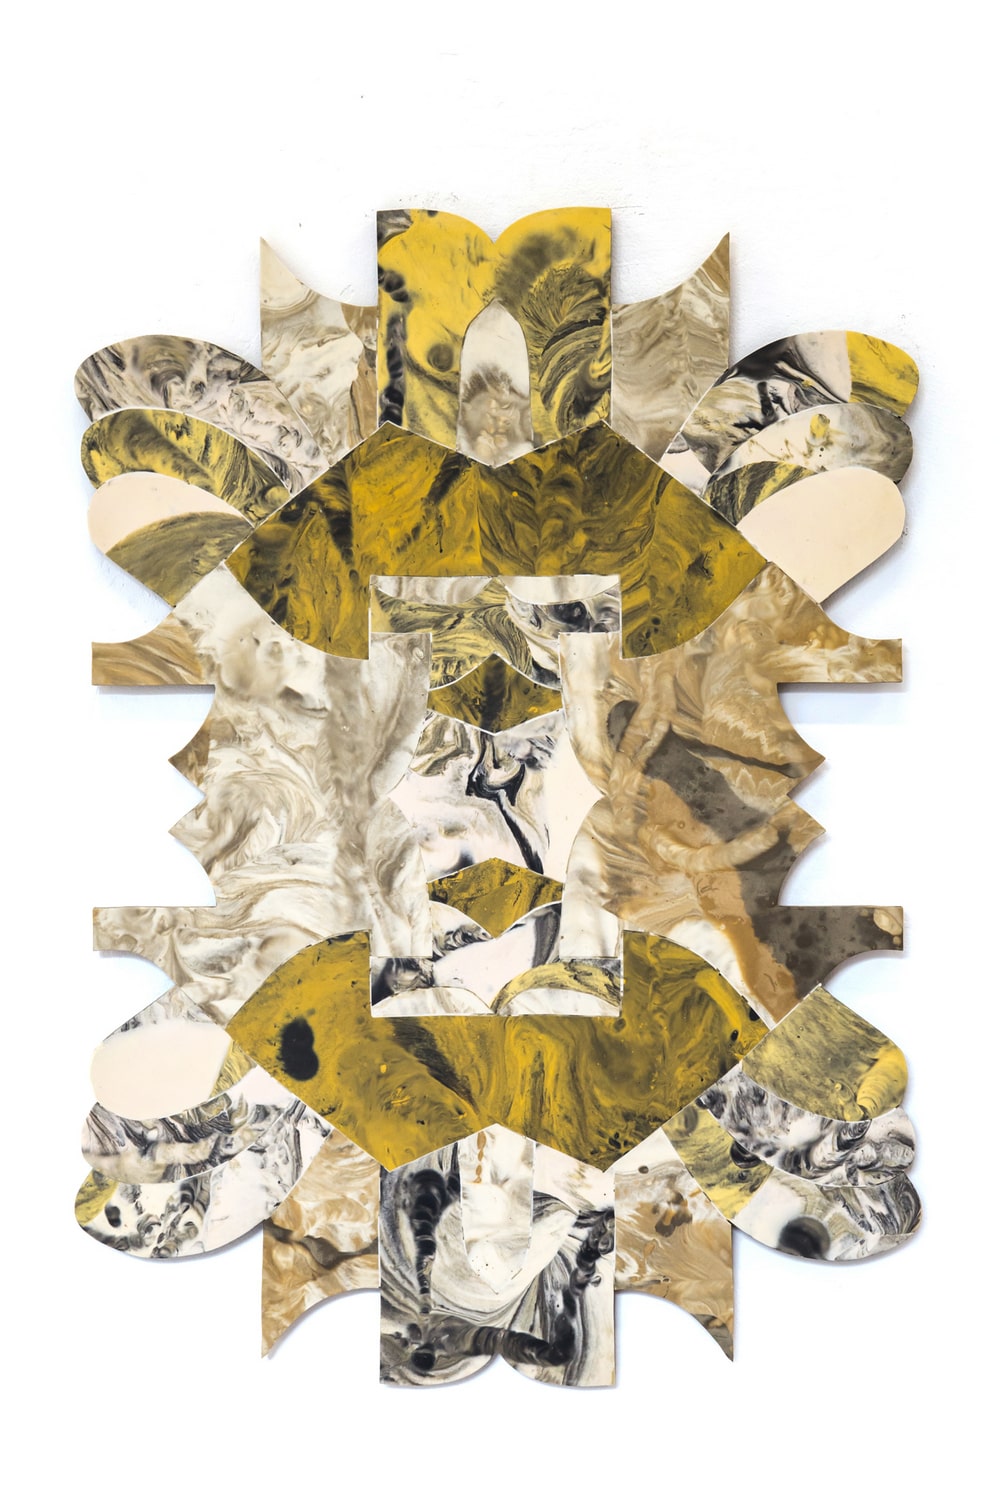 reprodukcja pracy - intarsja polimerowa przedstawiająca abstrakcyjną formę w kolorystyce brązowej